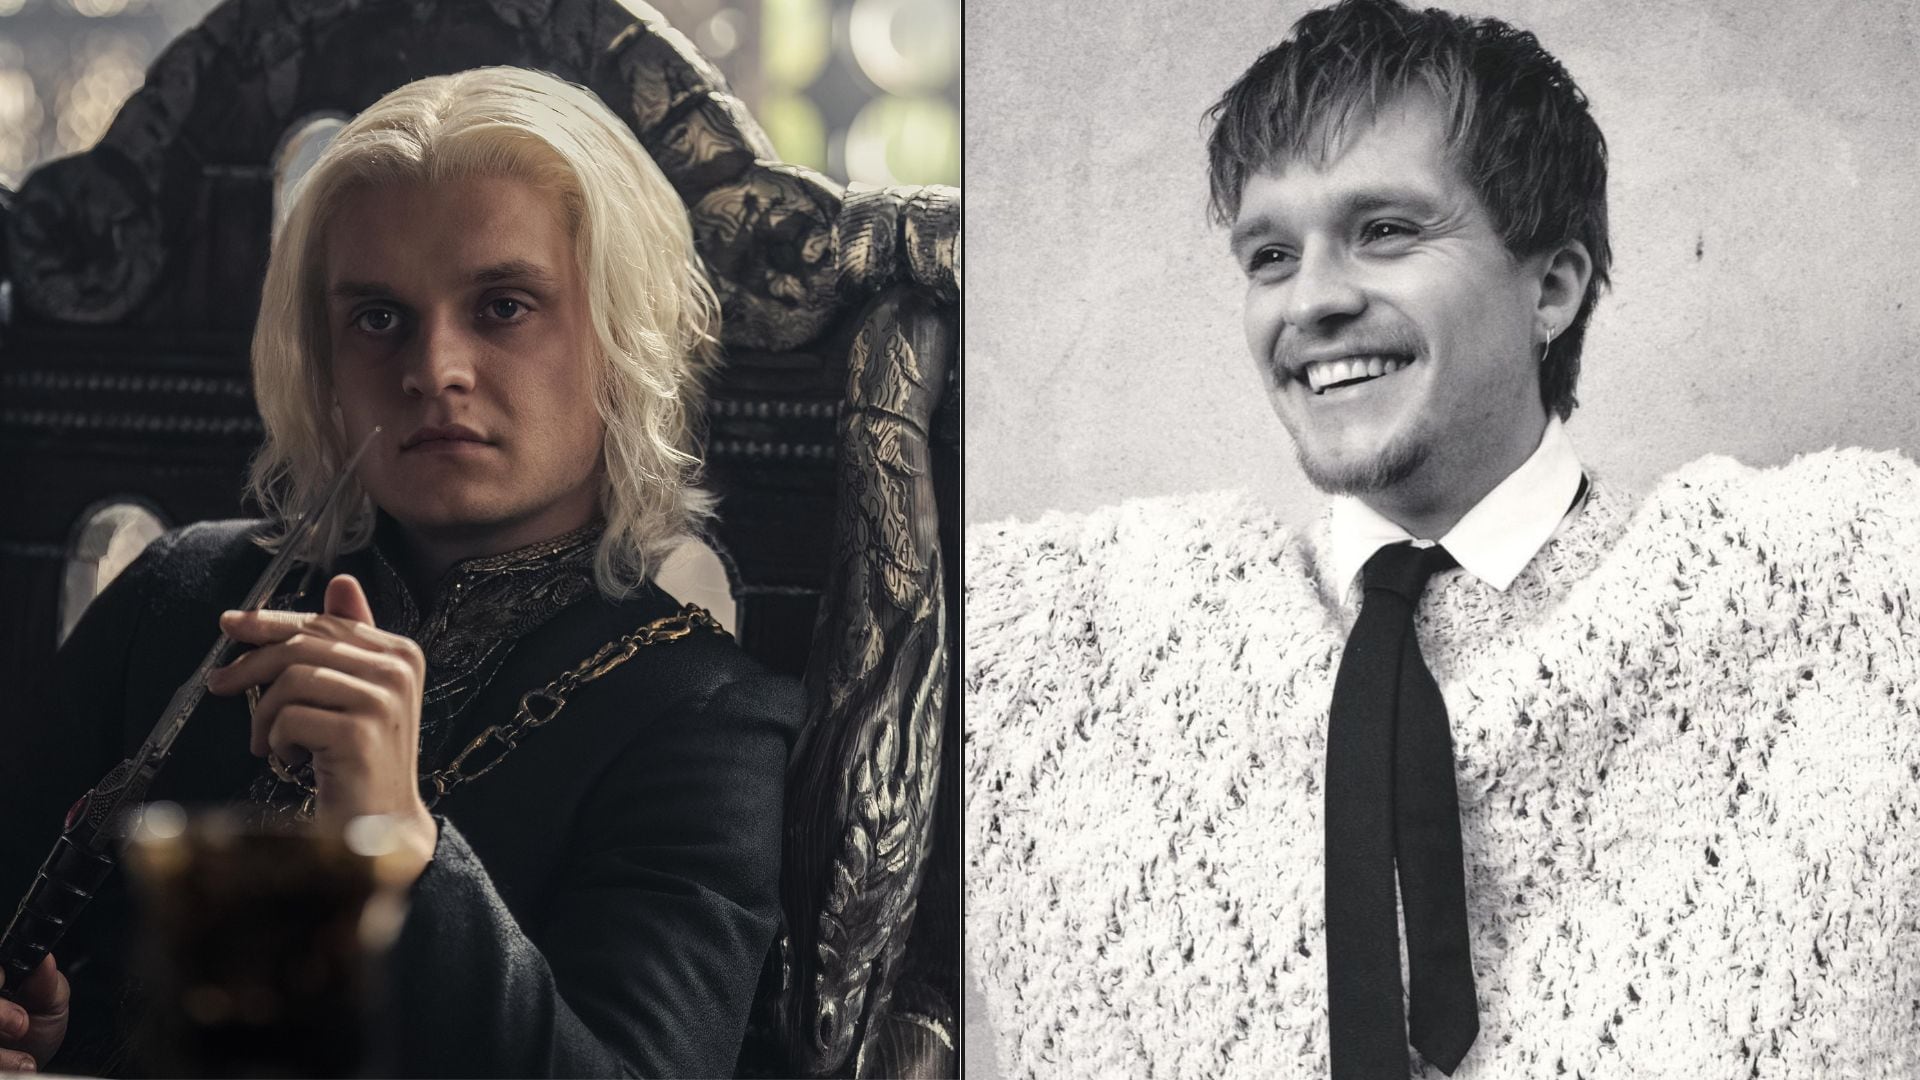 Tom Glynn-Carney (29 años) encarna a Aegon Targaryen, quien desafía al reinado de su hermana Rhaenyra en 'House of the Dragon'.